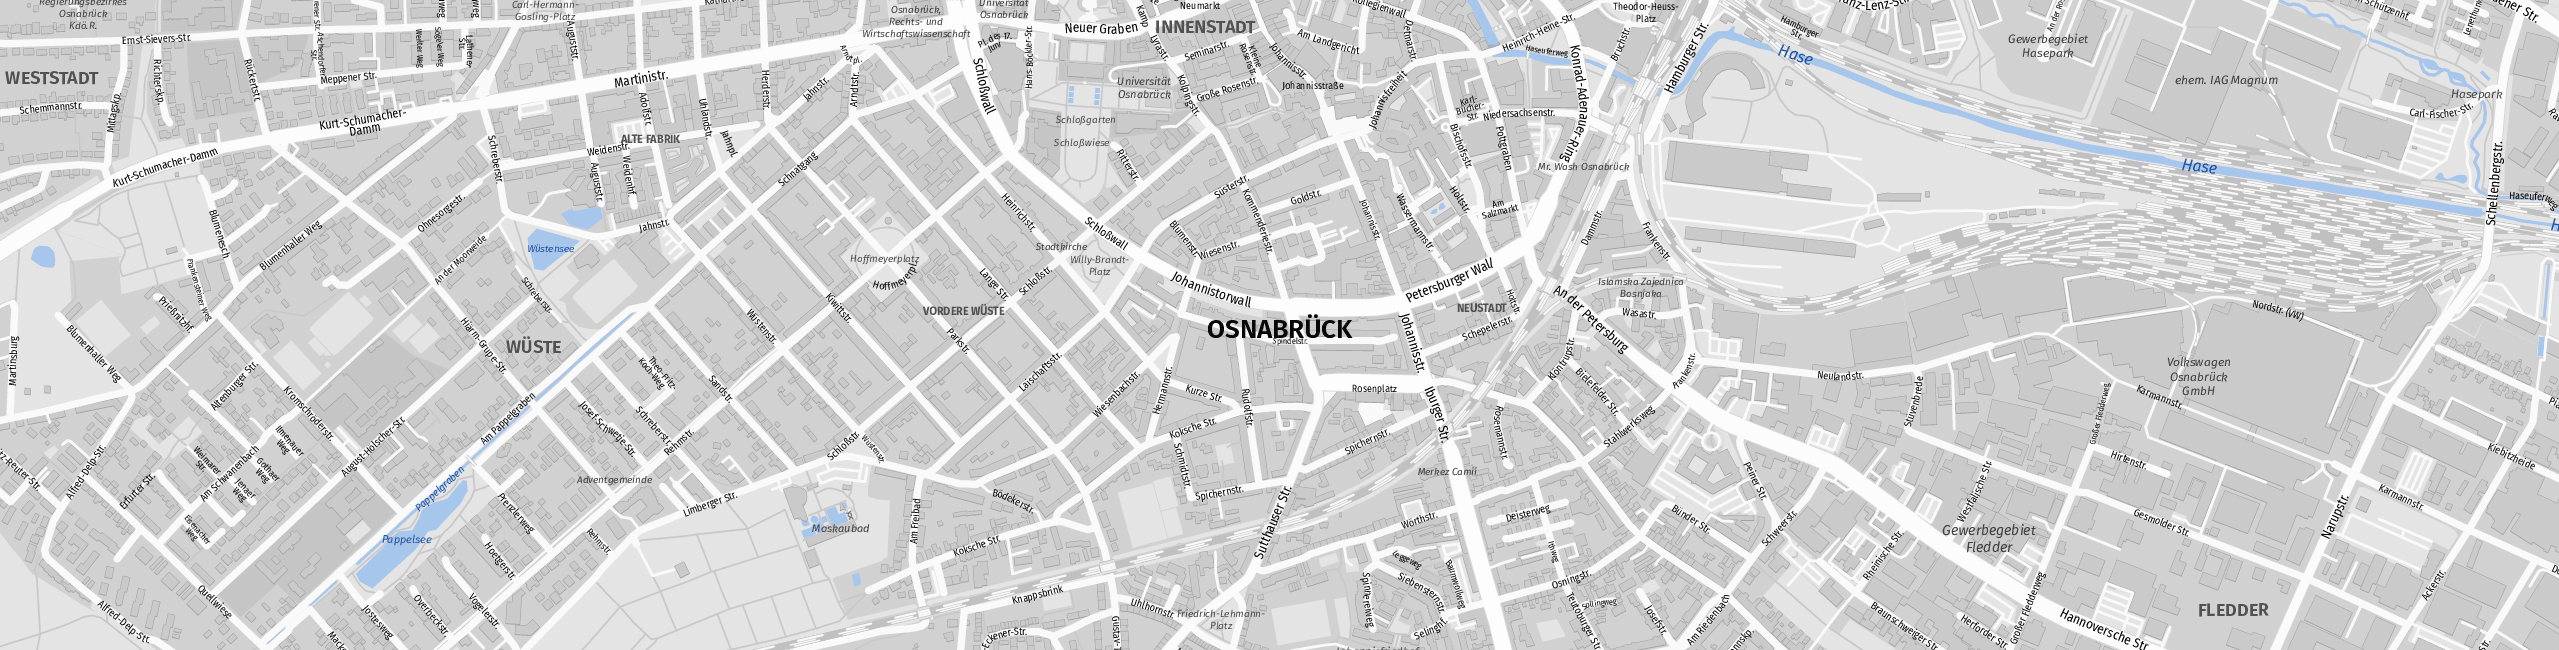 Stadtplan Osnabrück zum Downloaden.